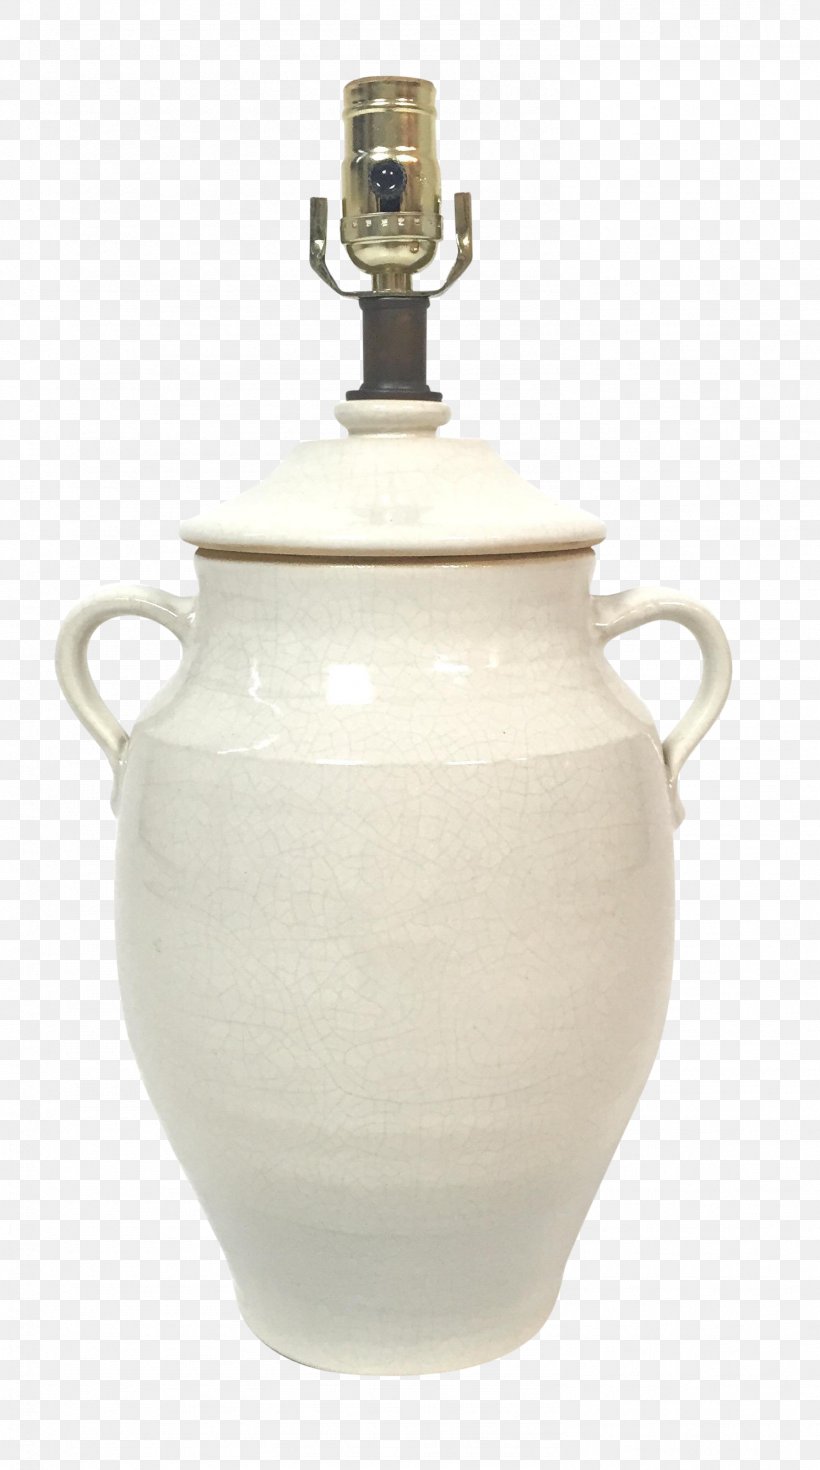 Tableware Kettle Jug Teapot Ceramic, PNG, 1489x2670px, Tableware, Ceramic, Cup, Dinnerware Set, Jug Download Free